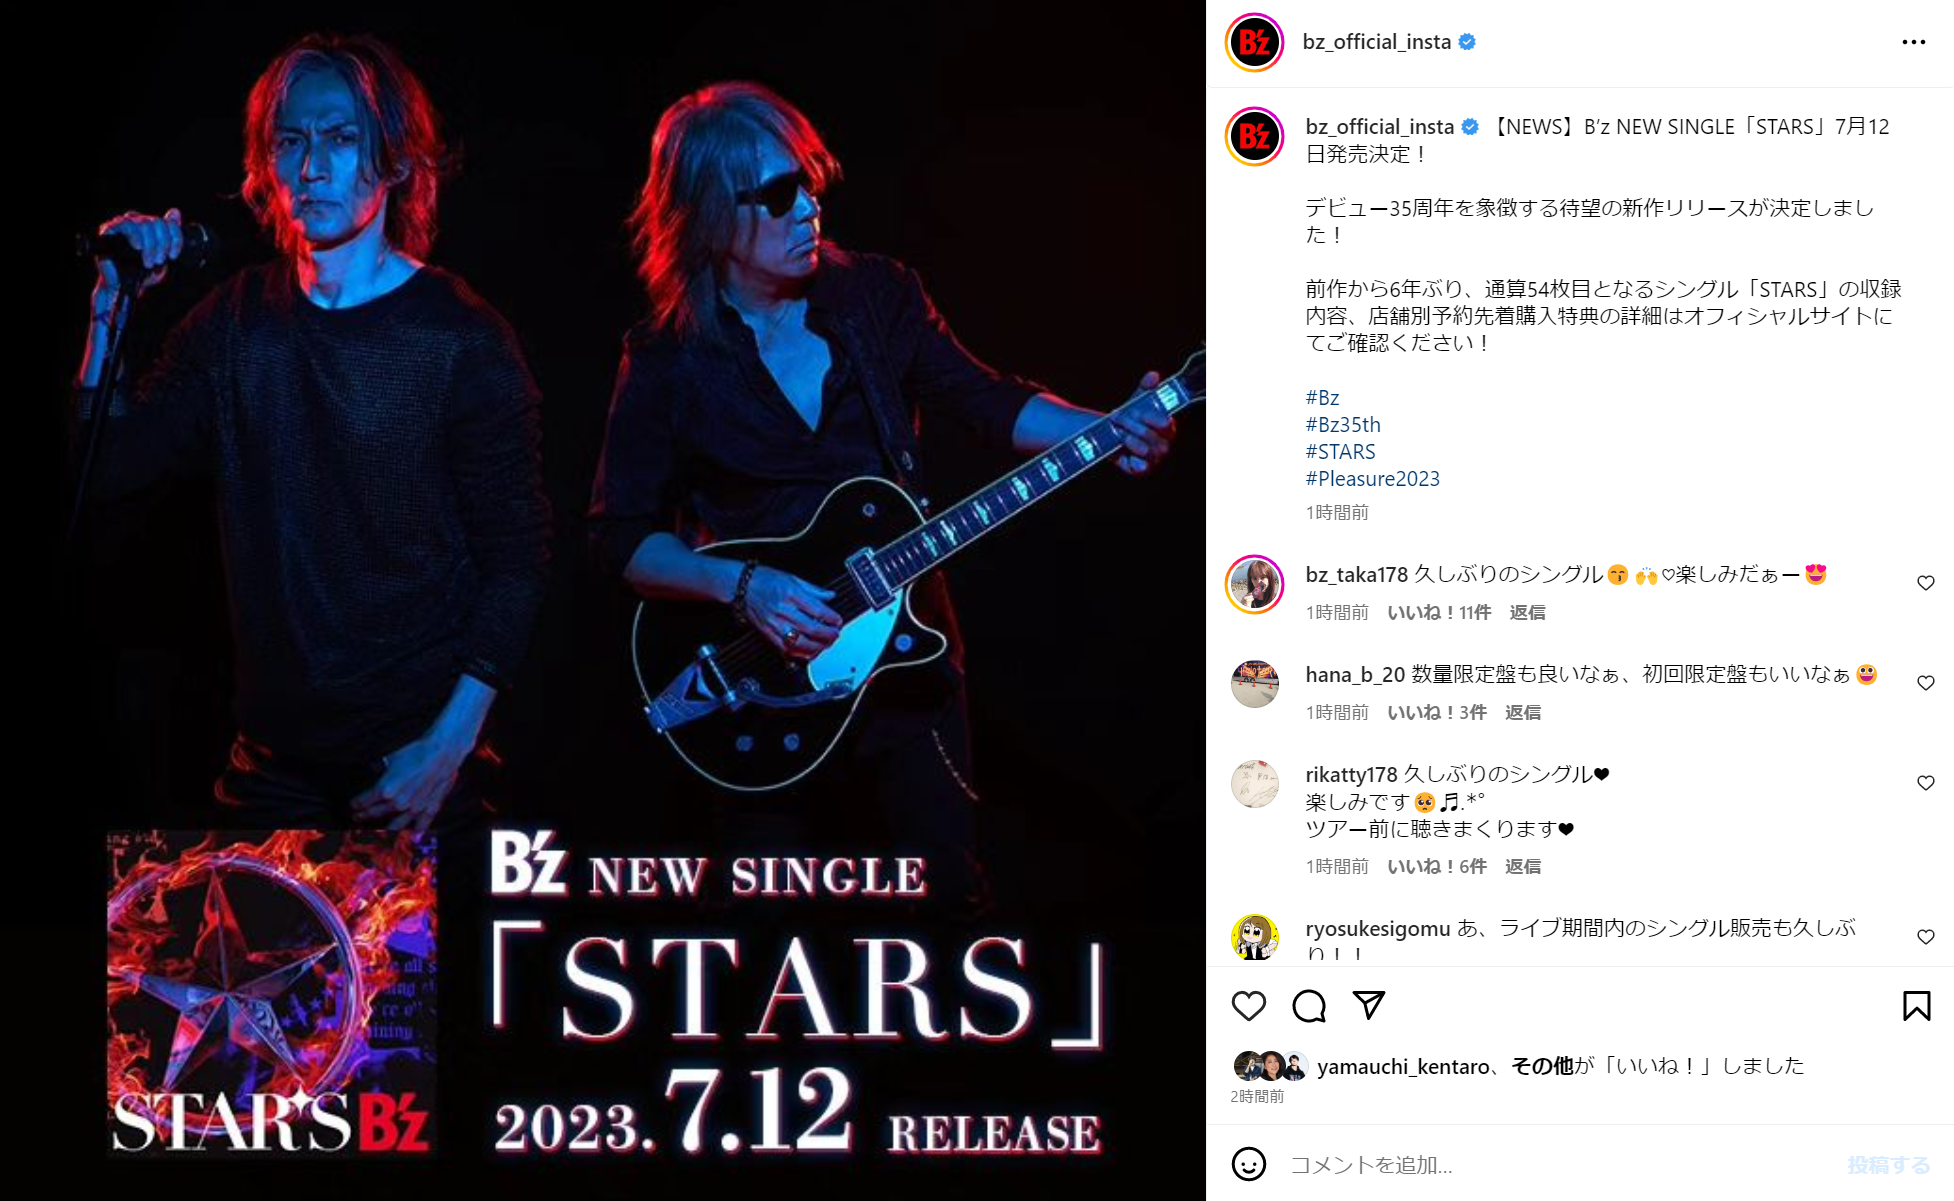 B'zのニューシングル「STARS」のリリースを告知する公式Instagram投稿のキャプチャ画像